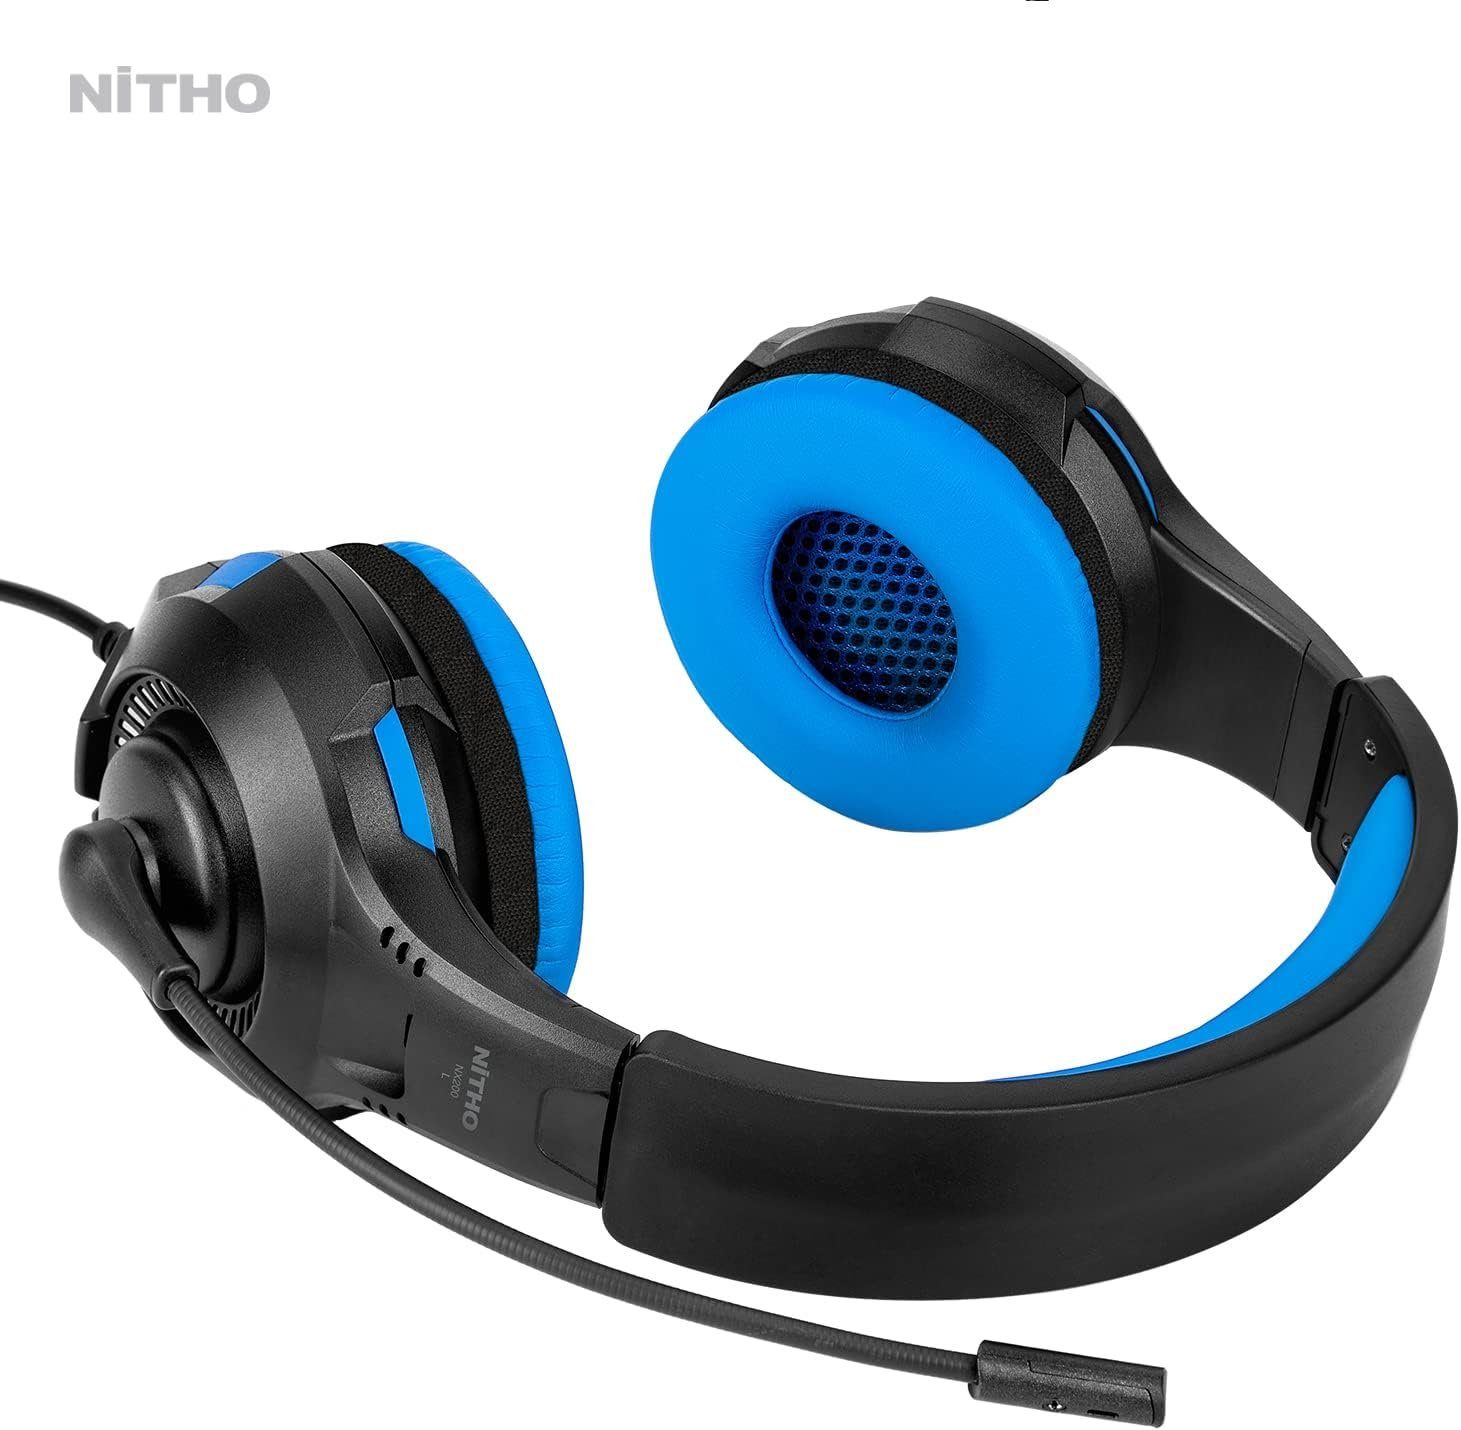 NITHO Gaming-Headset (Gaming Headset mit Hochklappbares Mikrofon, USB-Headset, Gaming headset kopfhörer mit hochklappbares mikrofon rgb lichteffekt)